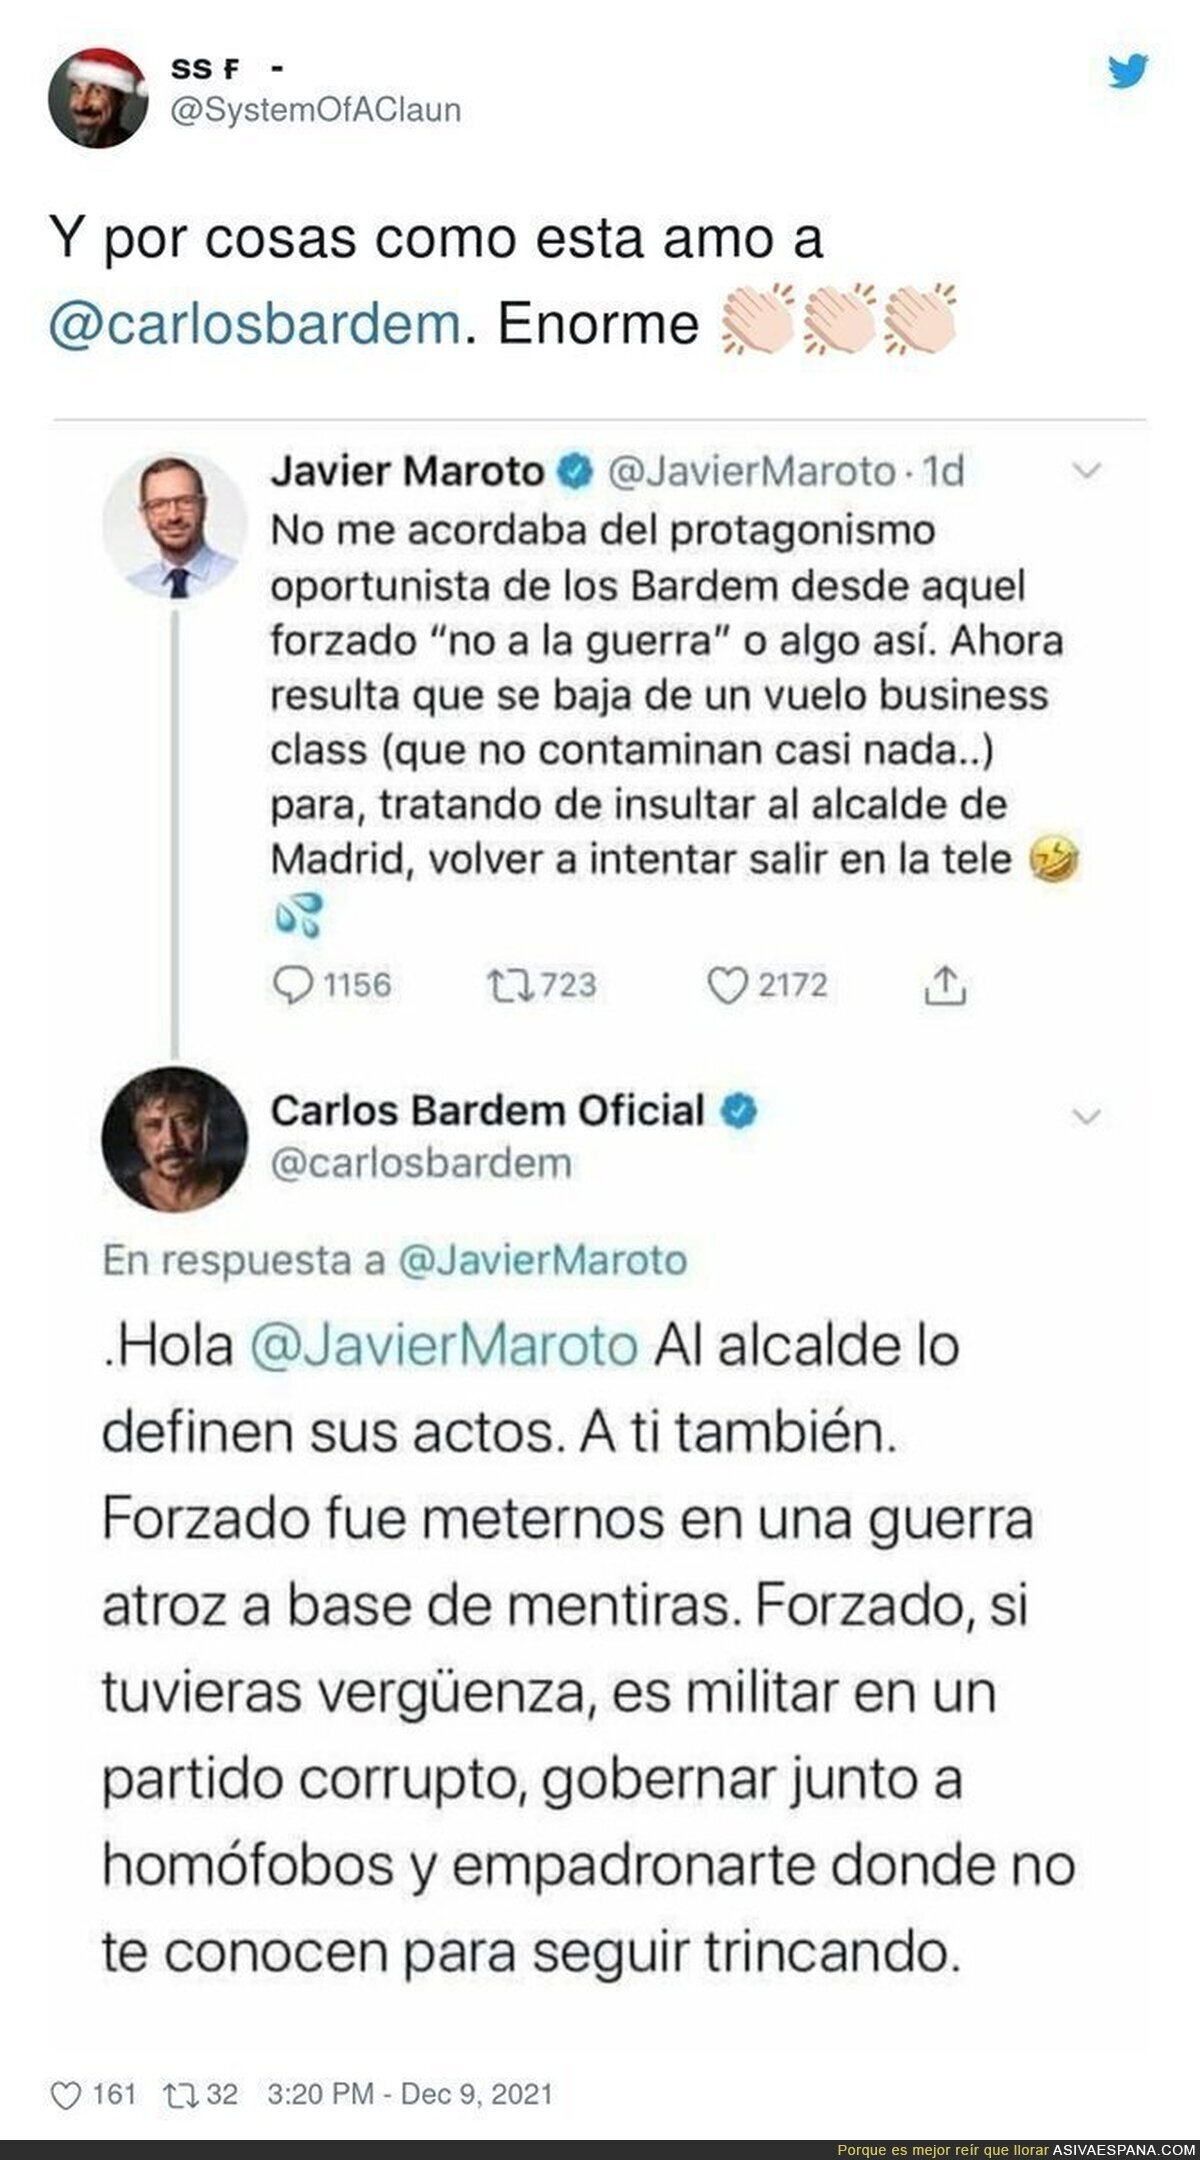 La brutal respuesta de Carlos Bardem al listillo de Javier Maroto tras este tuit contra su familia